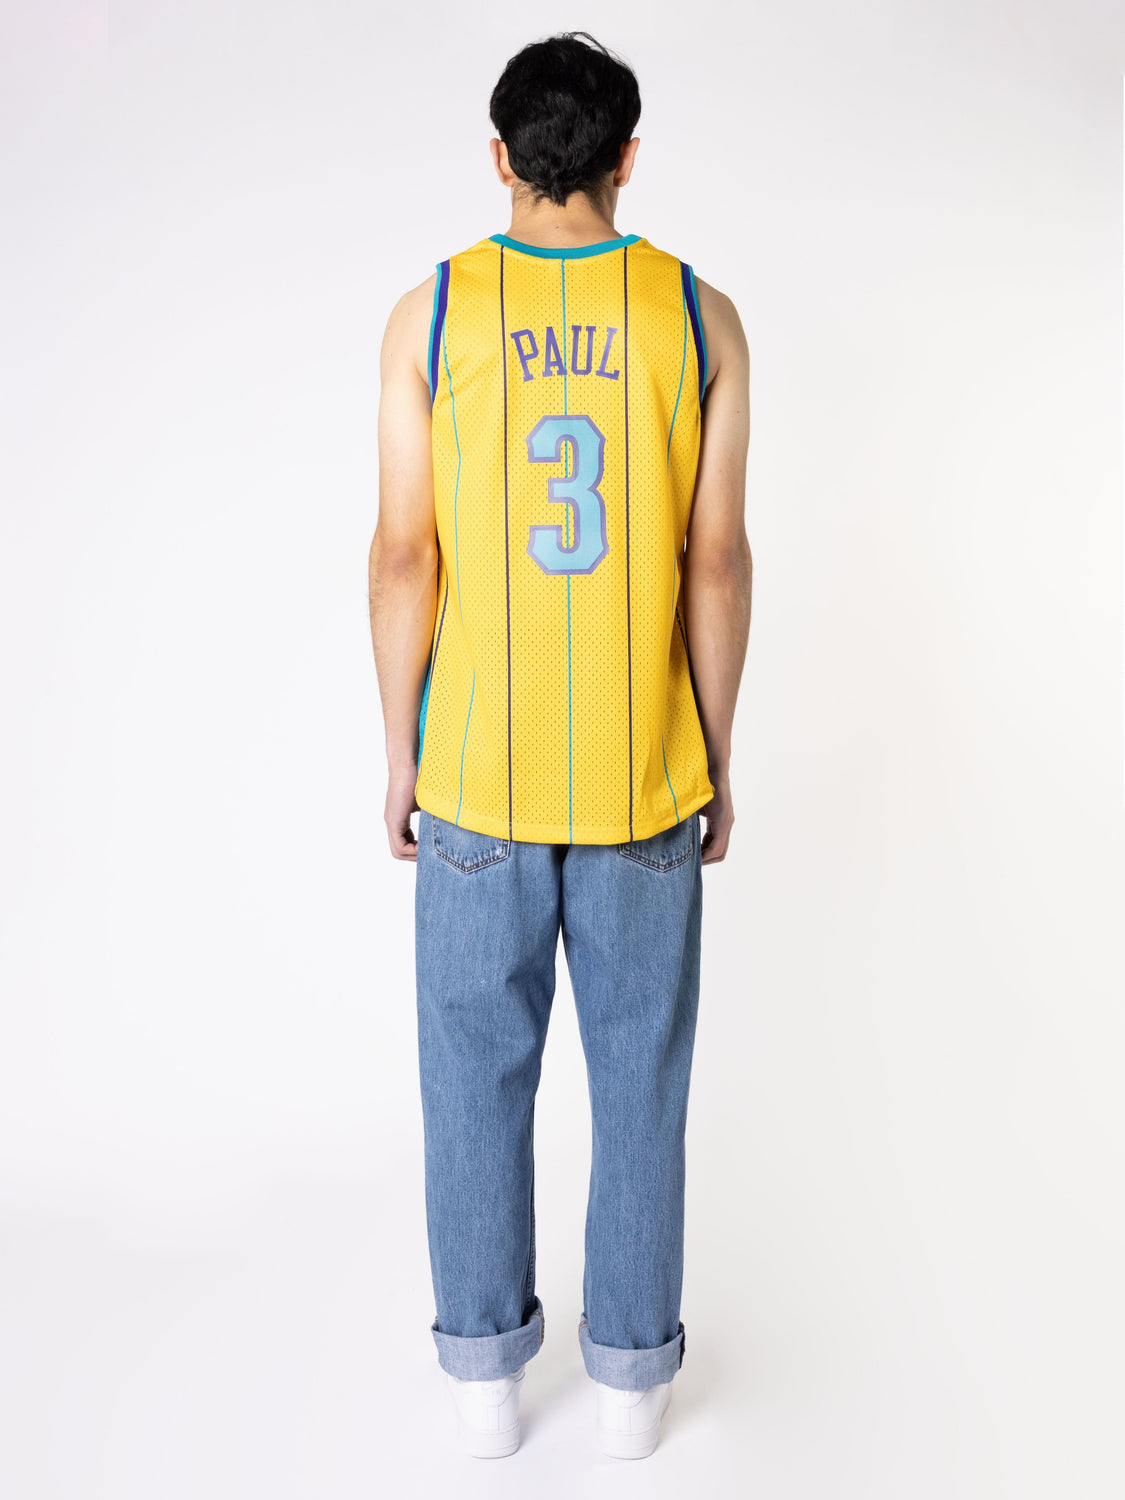 NBA, Shirts, Neworleans Pelicans Chris Paul Jersey Men 2xl Xxl Nba 3 V  Neck Sleeveless Top